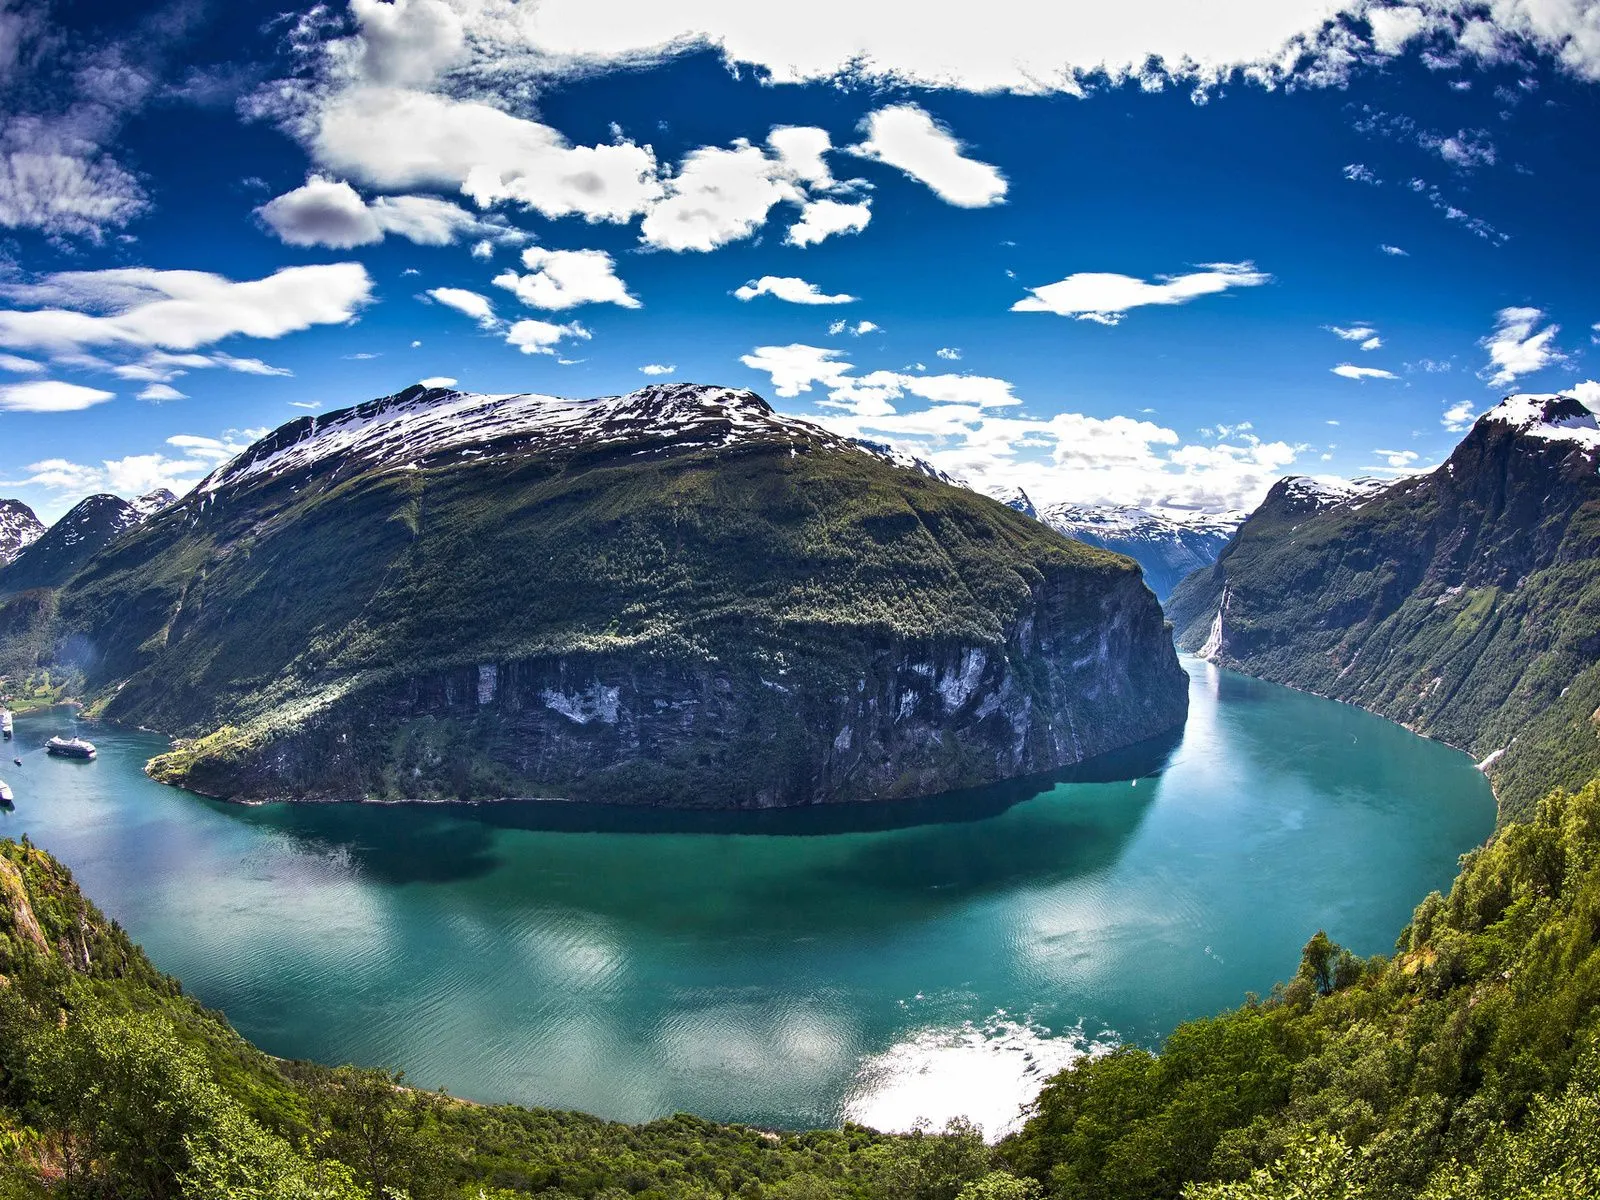 Fotos de montaña lago para facebook ~ Mejores Fotos del Mundo ...